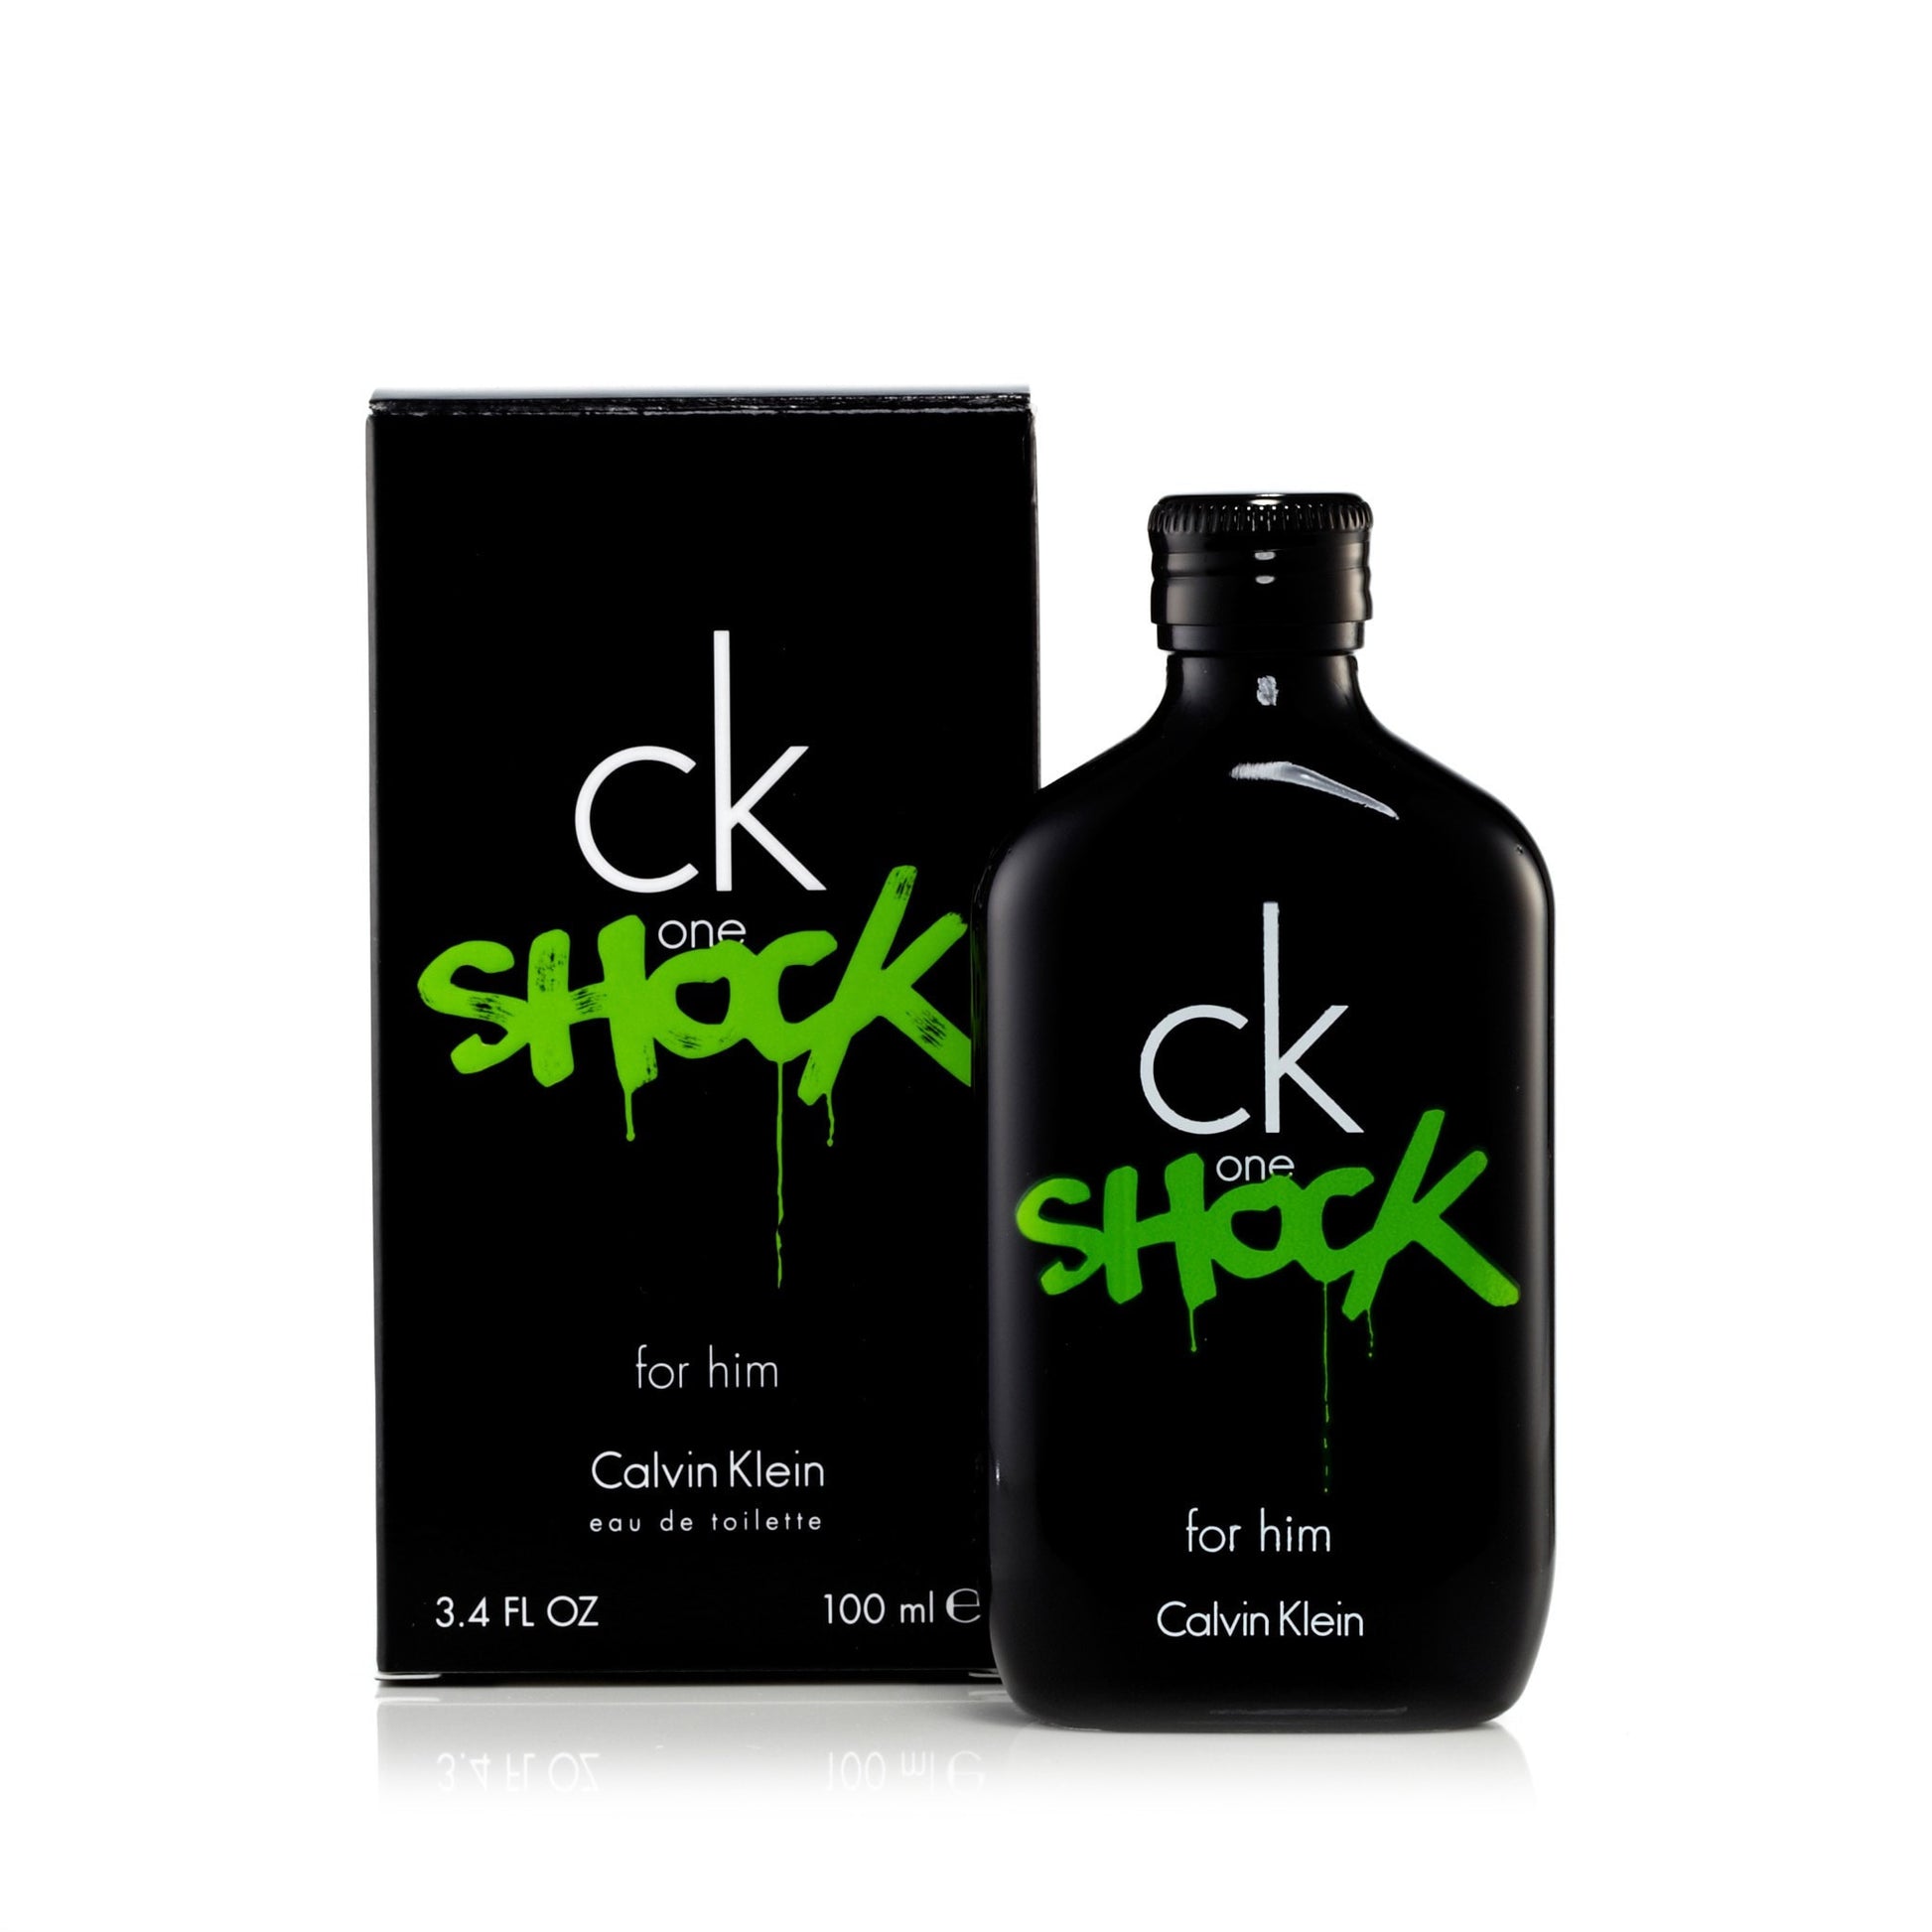 CK One Shock Eau de Toilette Spray for Men by Calvin Klein 3.4 oz. Click to open in modal